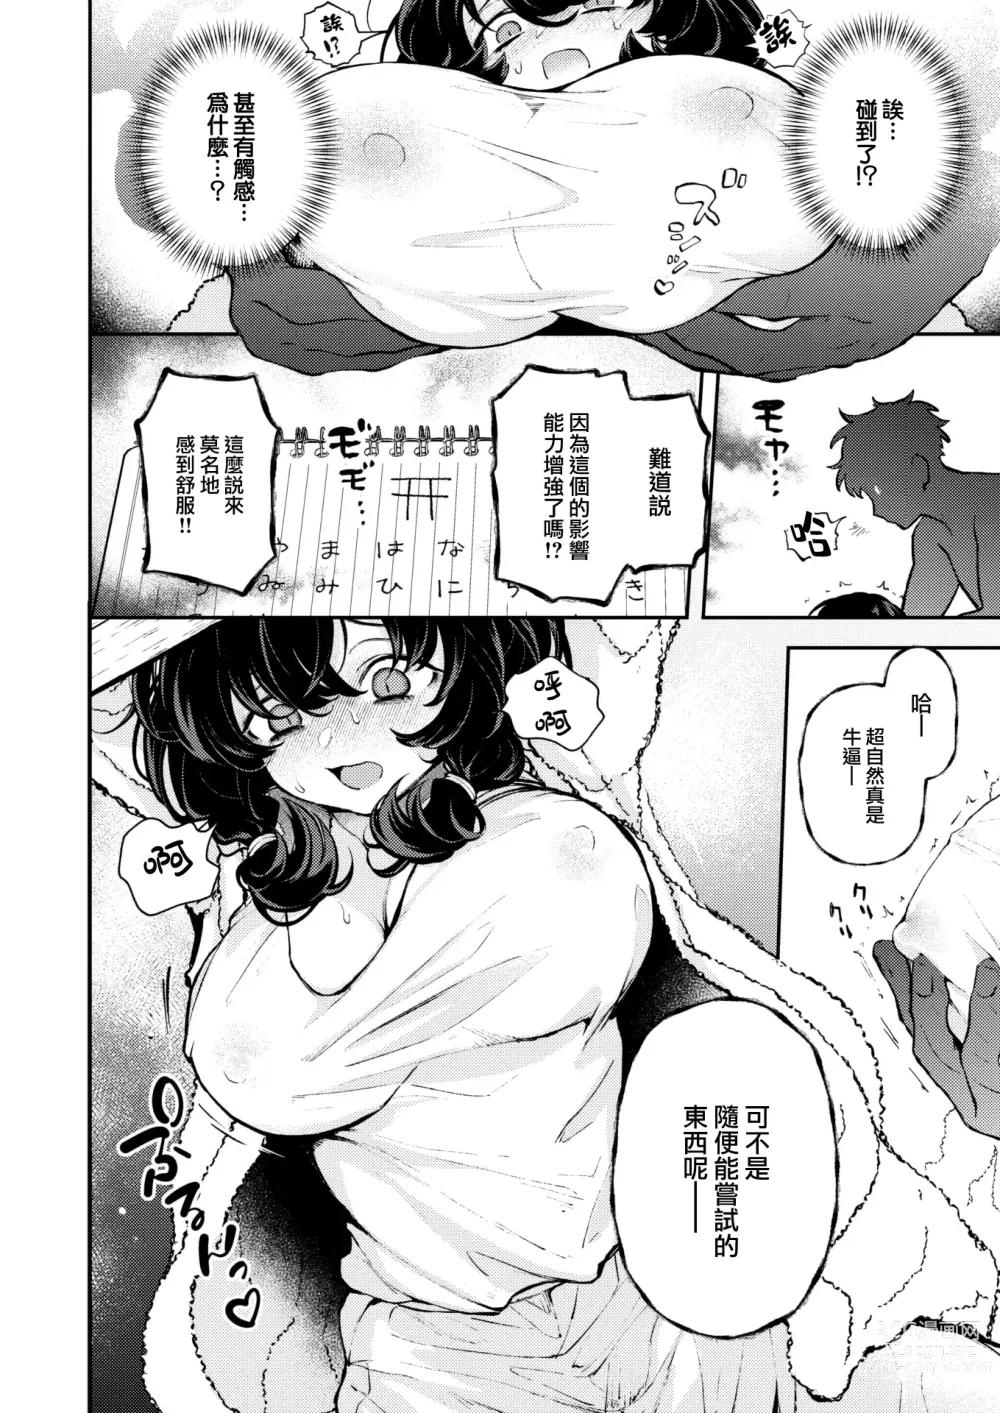 Page 9 of manga Hitori de Shinaide